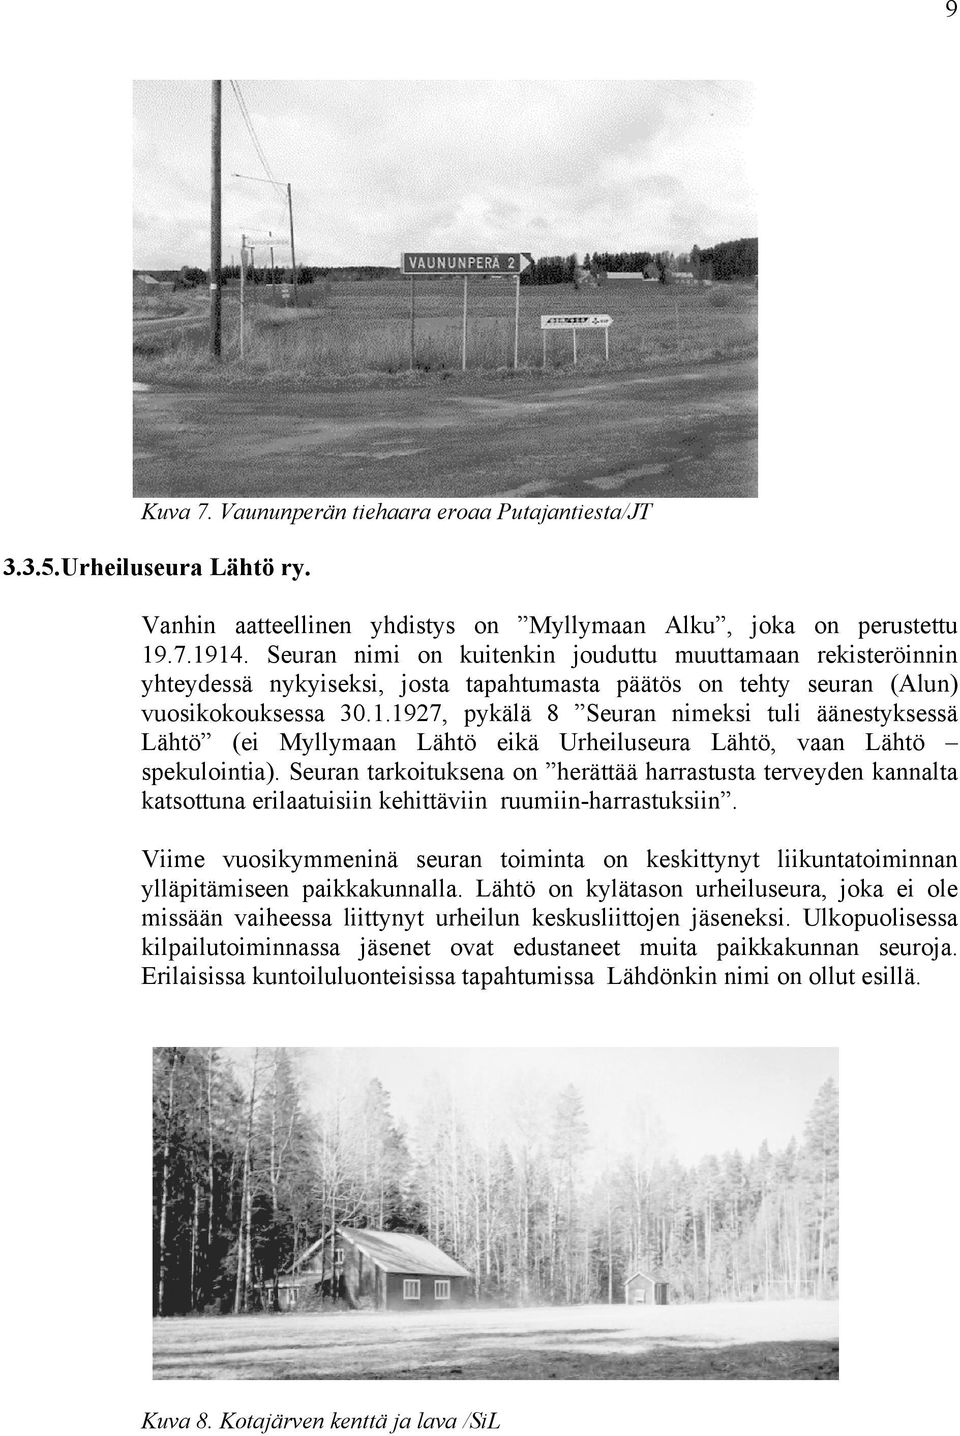 1927, pykälä 8 Seuran nimeksi tuli äänestyksessä Lähtö (ei Myllymaan Lähtö eikä Urheiluseura Lähtö, vaan Lähtö spekulointia).